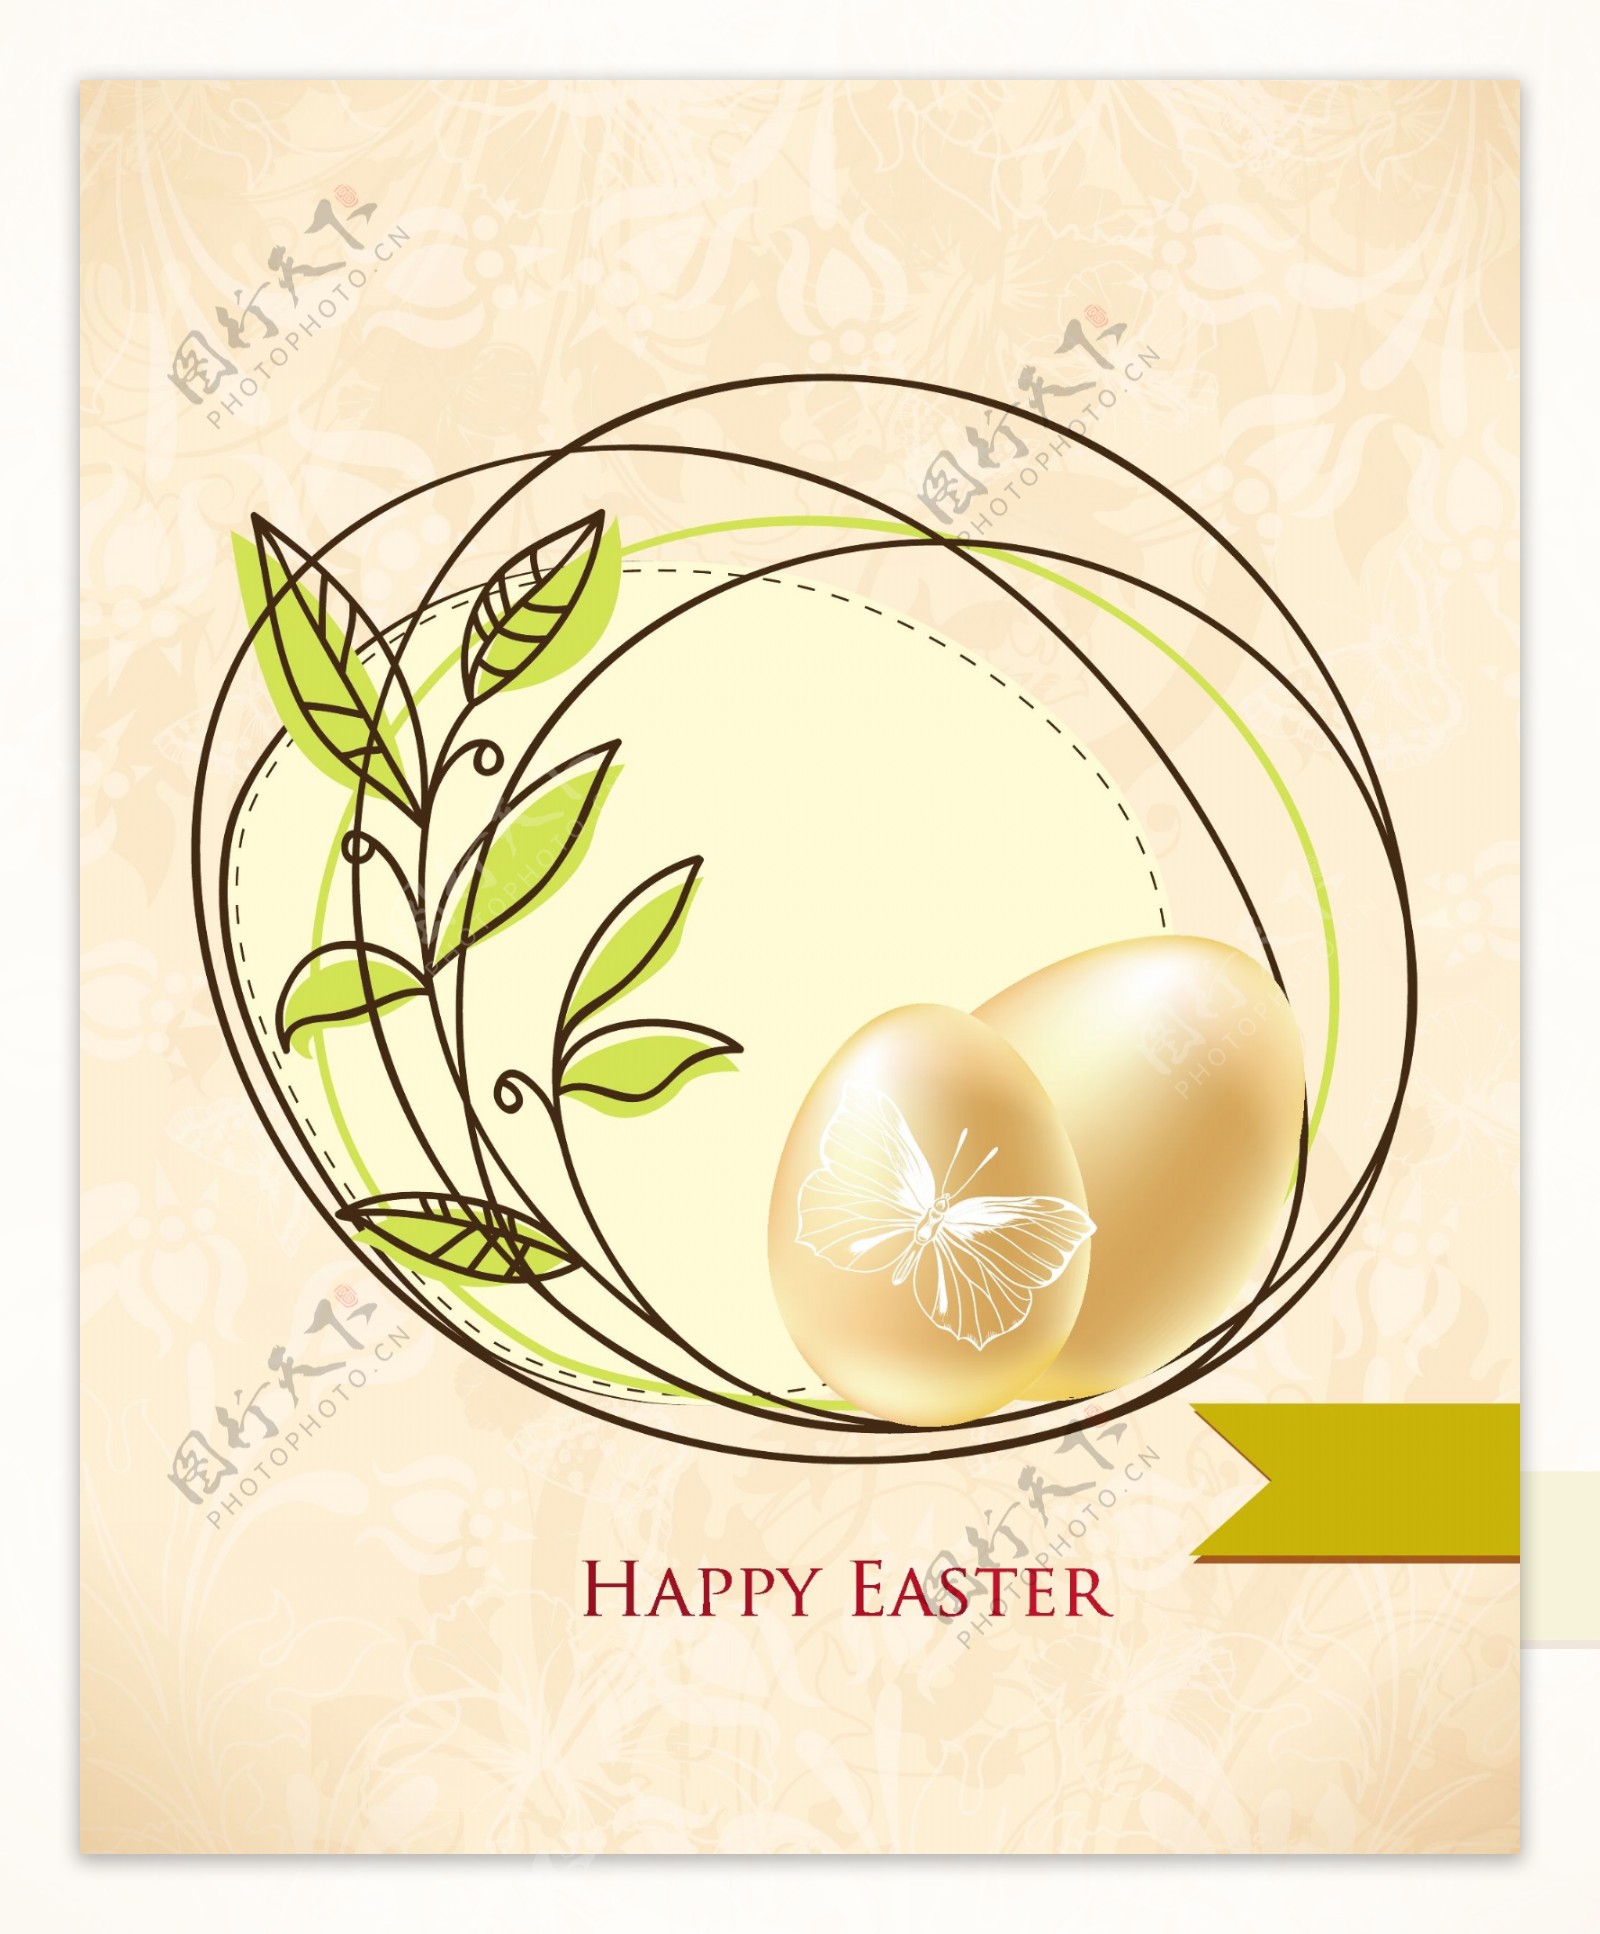 复活节复活节插画矢量框架和鸡蛋